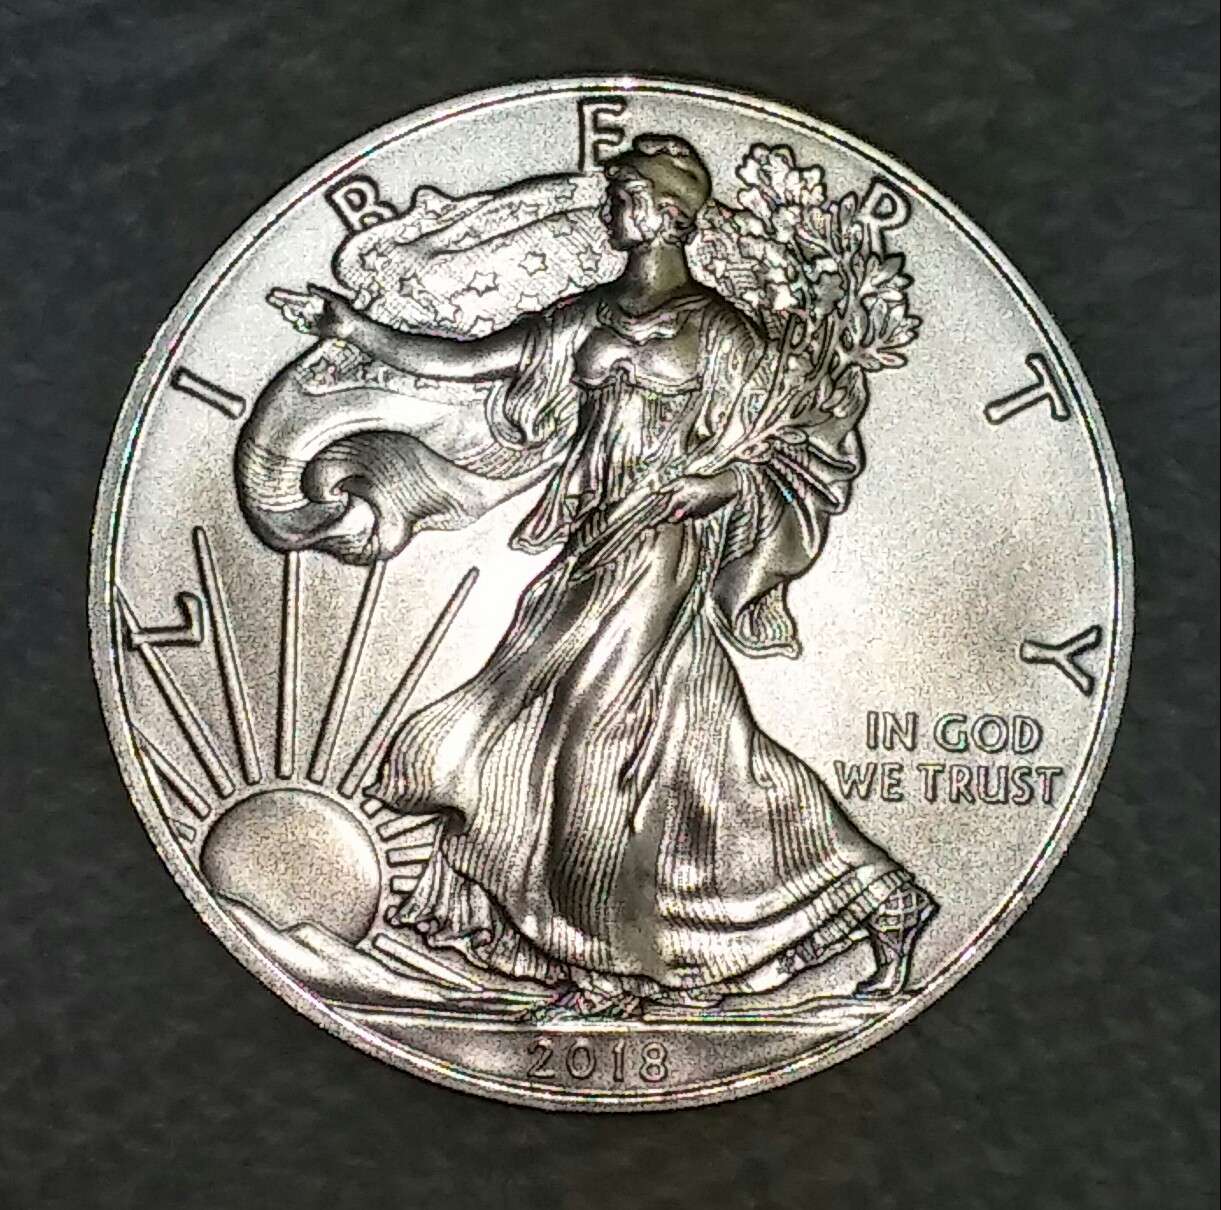 Pristine BU American Silver eagle dollar coin American Silver Eagle Coin dollar currency .999 United States Silver Eagle